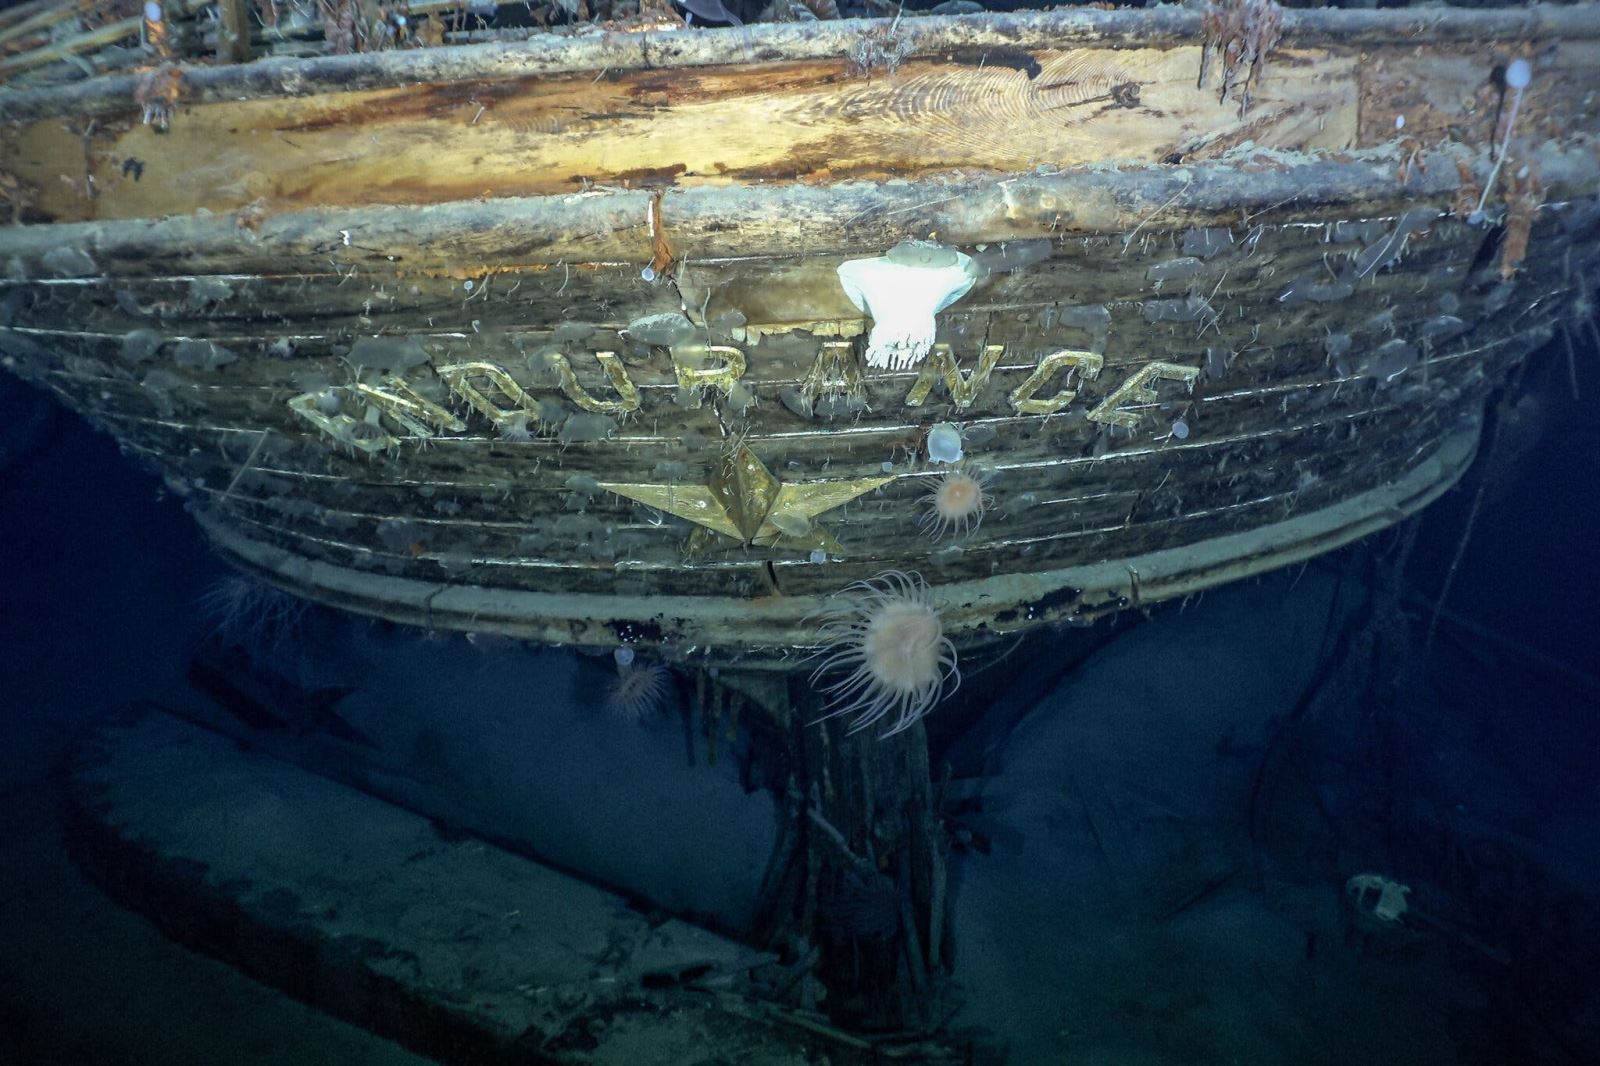 Trải nghiệm tour thăm xác tài Titanic độc đáo cho hội thích khám phá đại dương